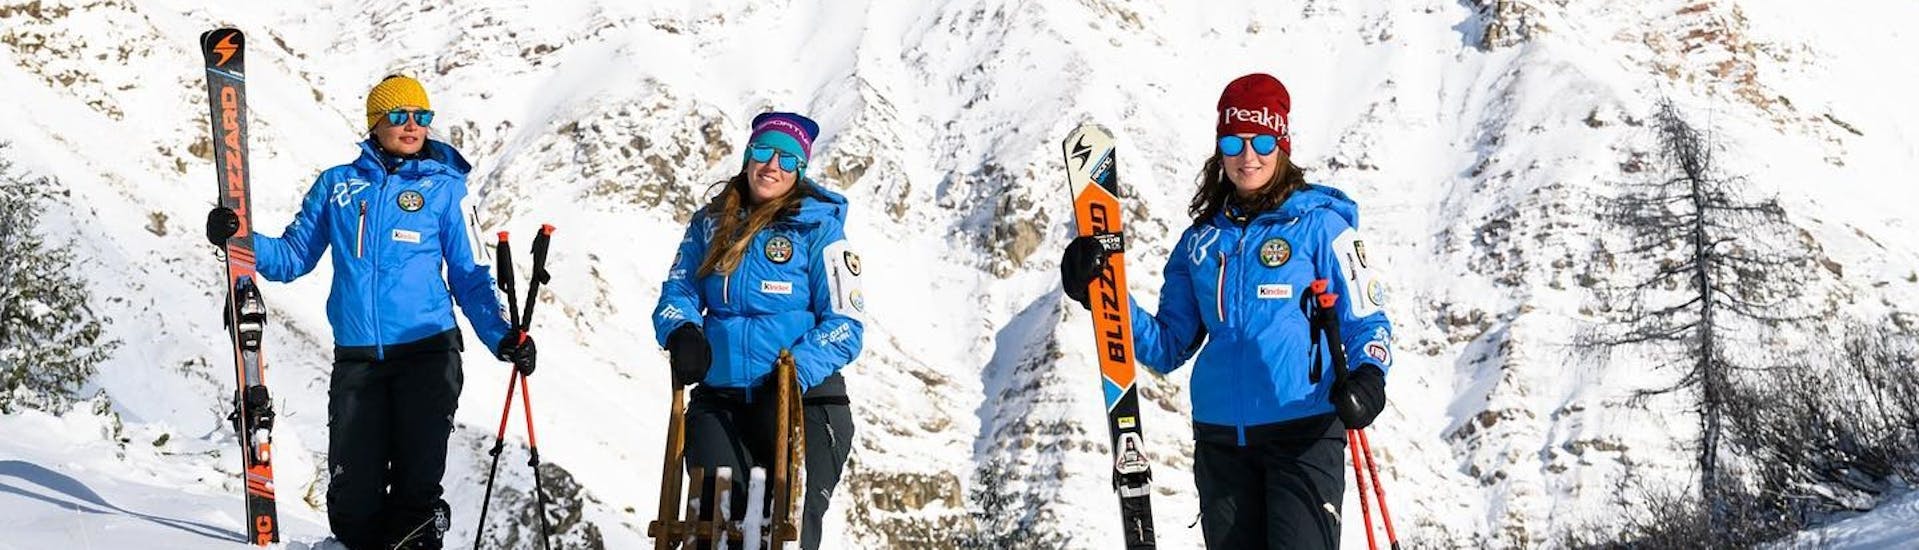 Maestri di sci pronti per un'altra delle lezioni private di sci per adulti di tutti i livelli a Predazzo.